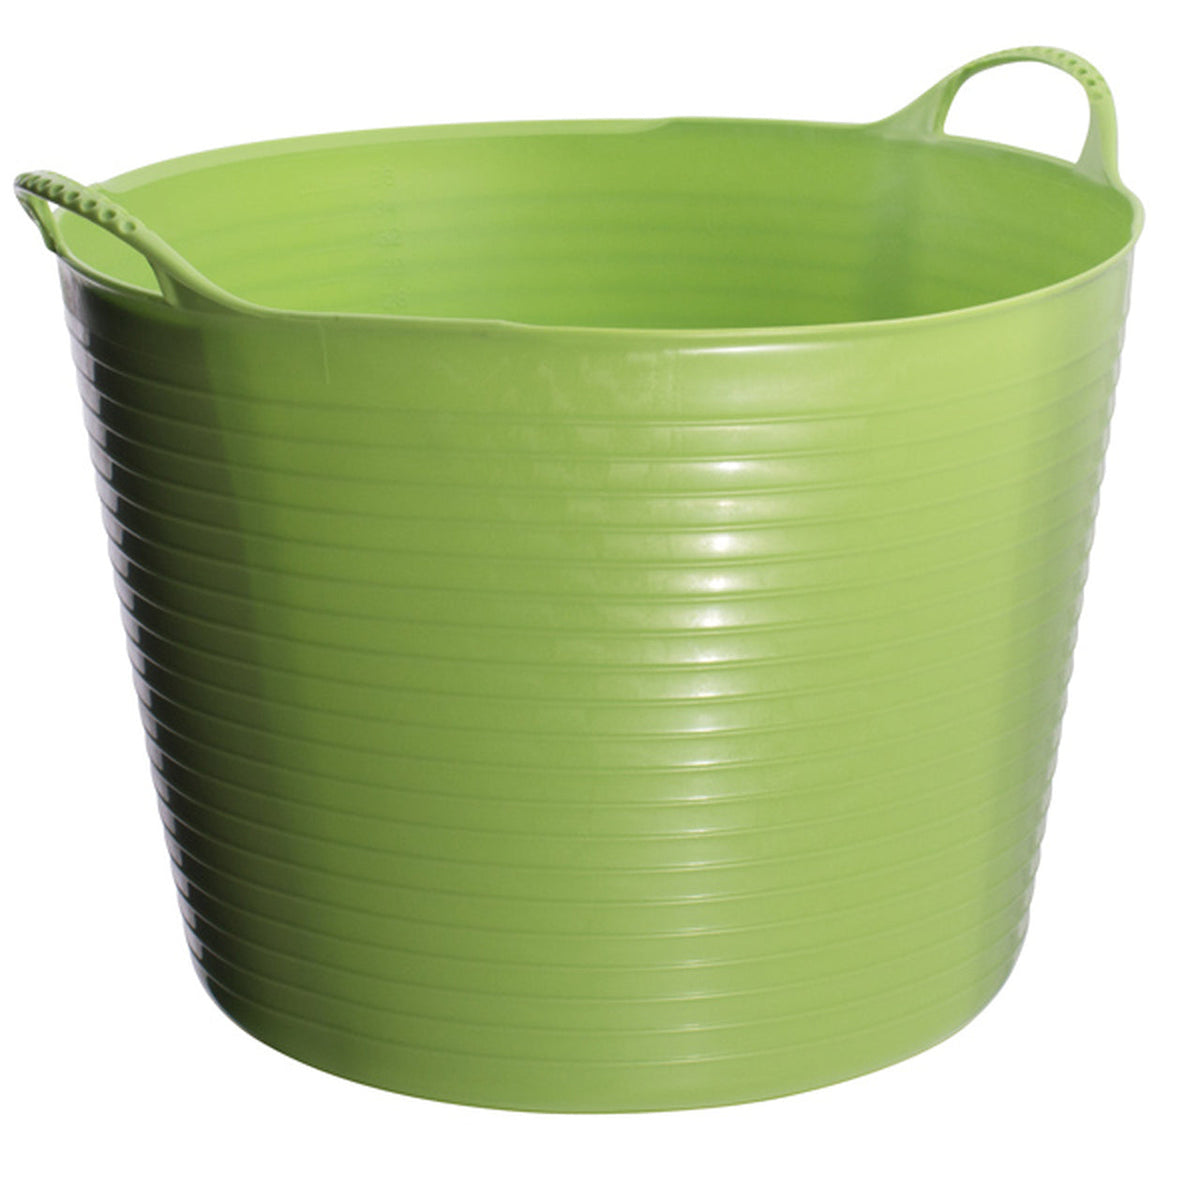 Lime green tubs